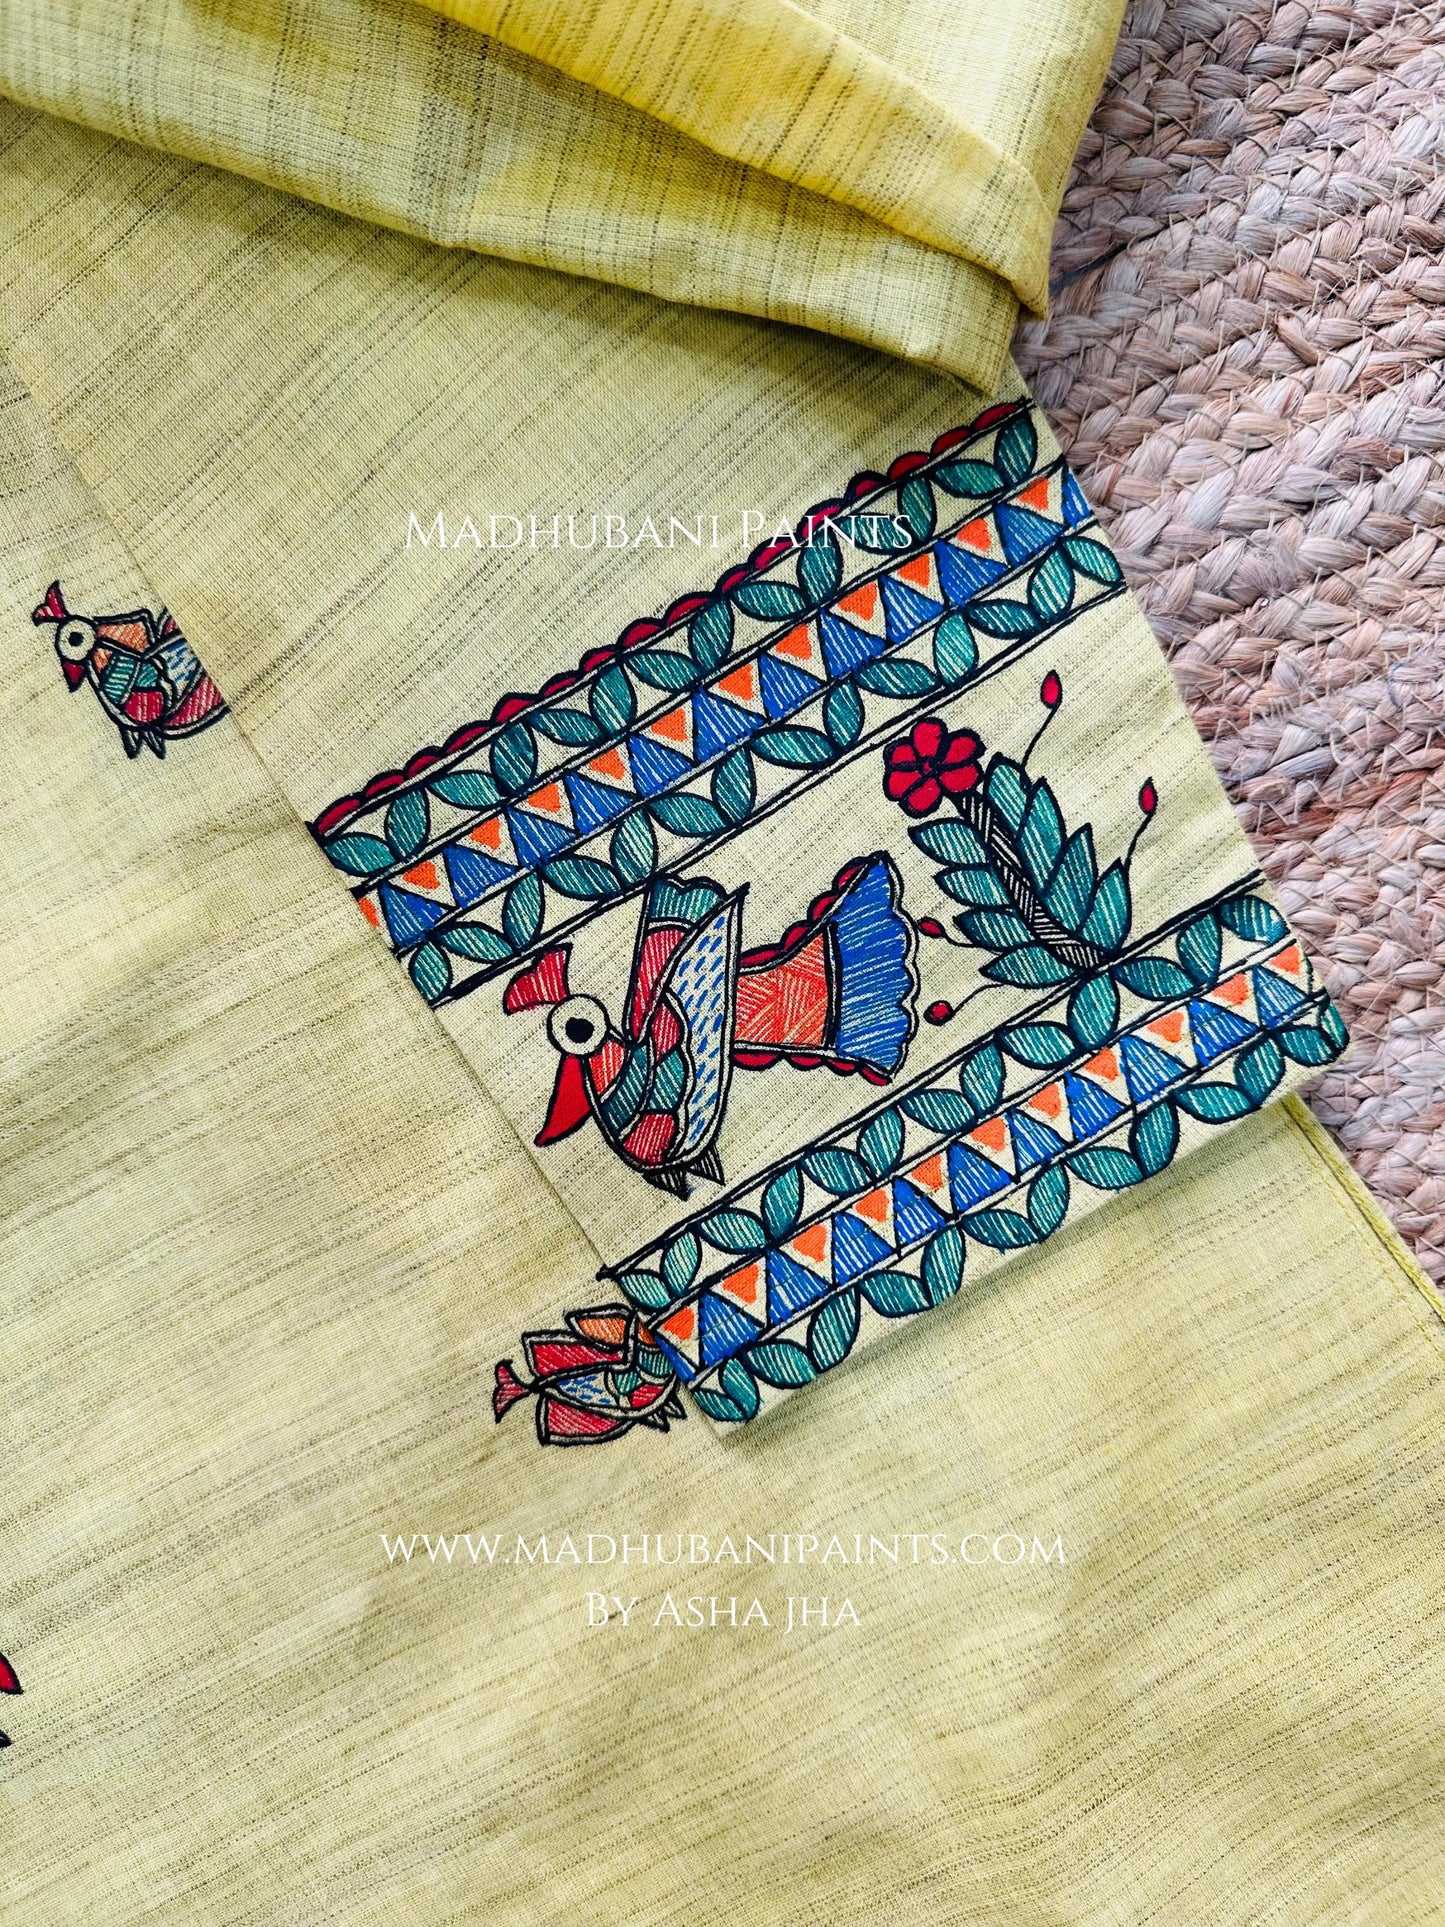 Yellow Mayuri Men’s Hand-painted Handloom Cotton Kurta